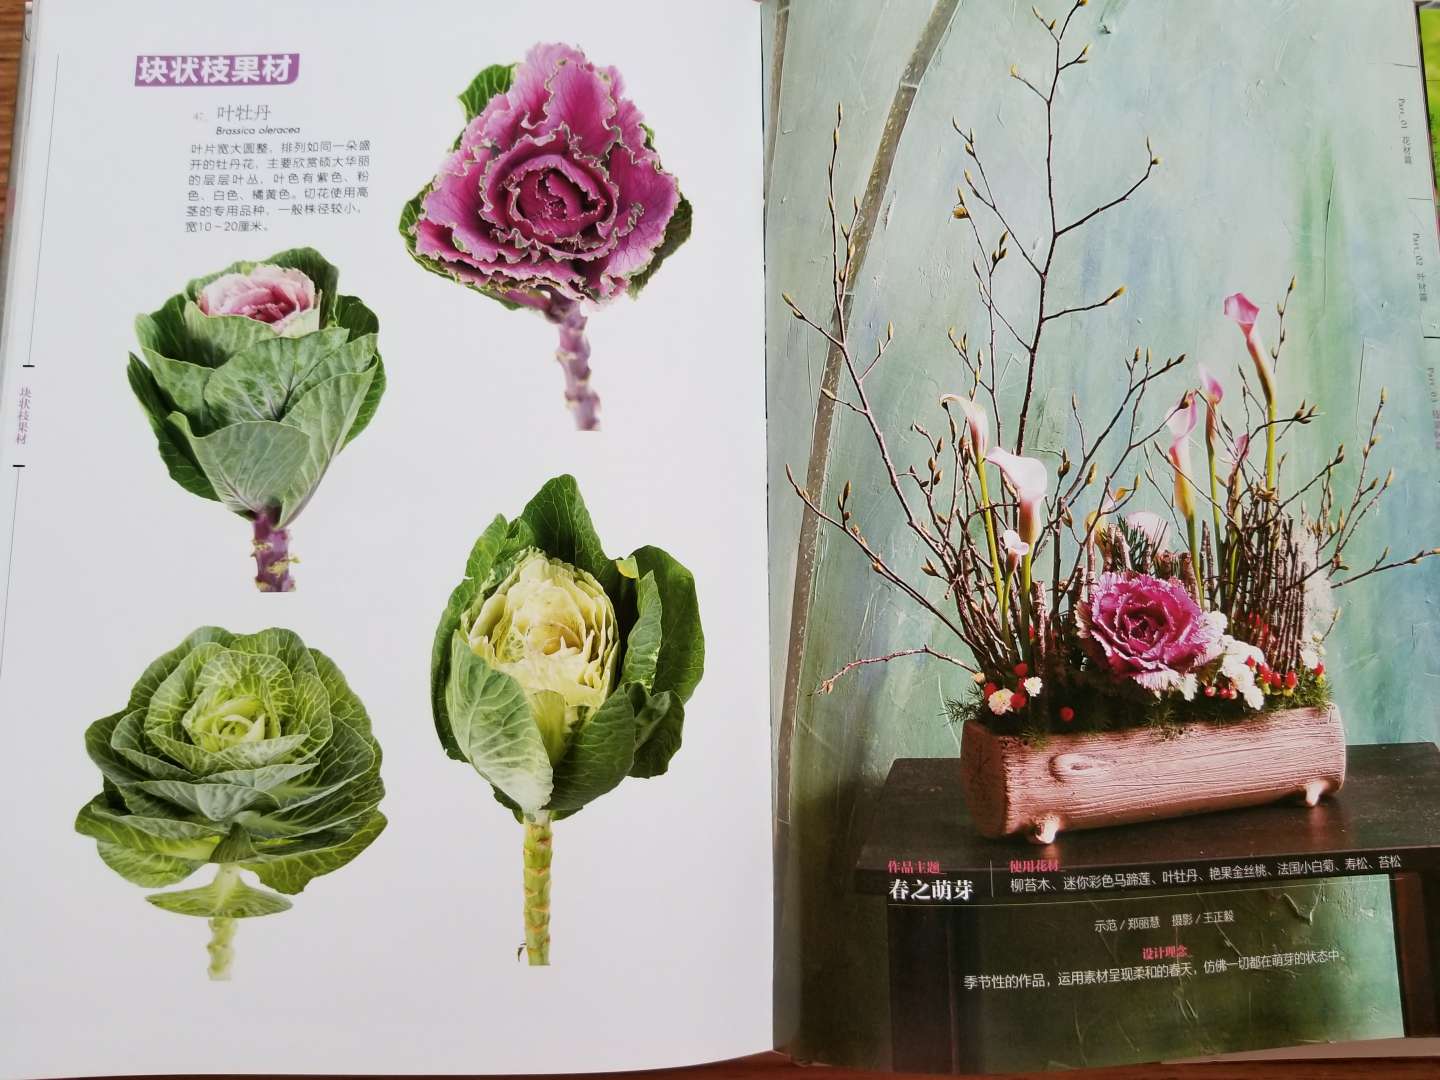 印刷清晰，有各种花材的介绍，及花艺设计范例。内容挺充实的，值得一看。